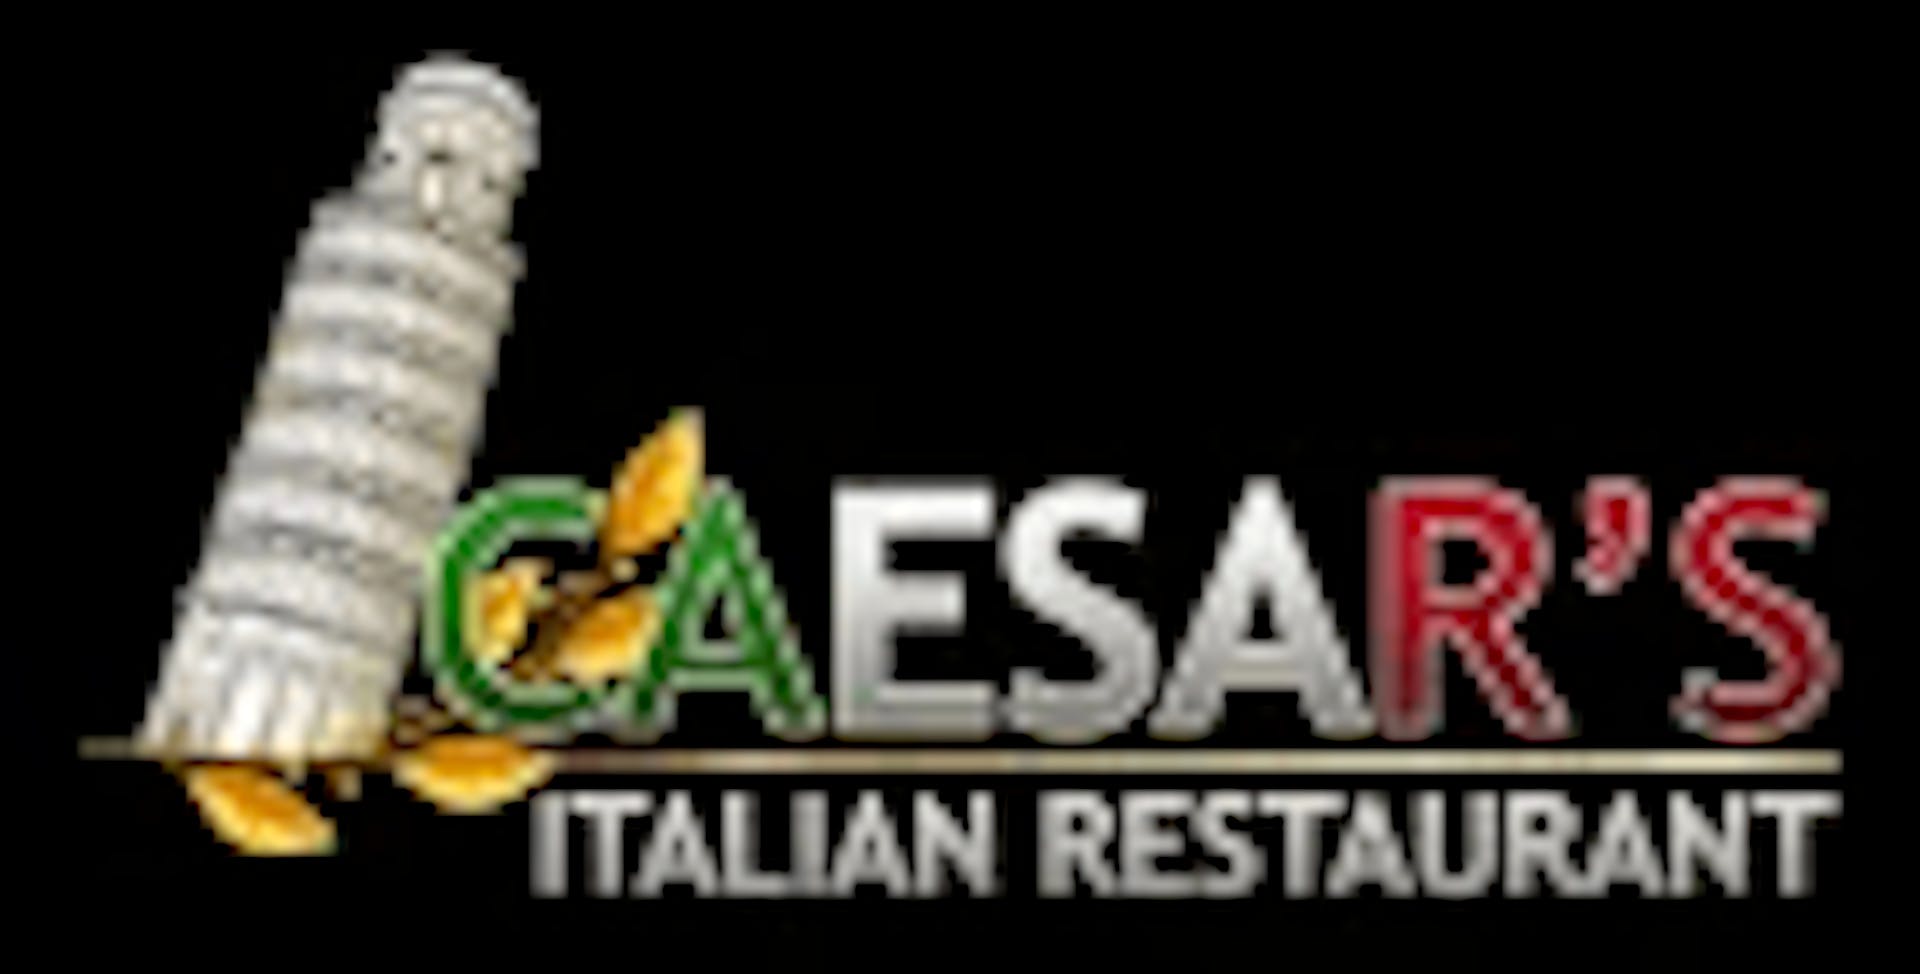 Caesar's Italian Restaurant